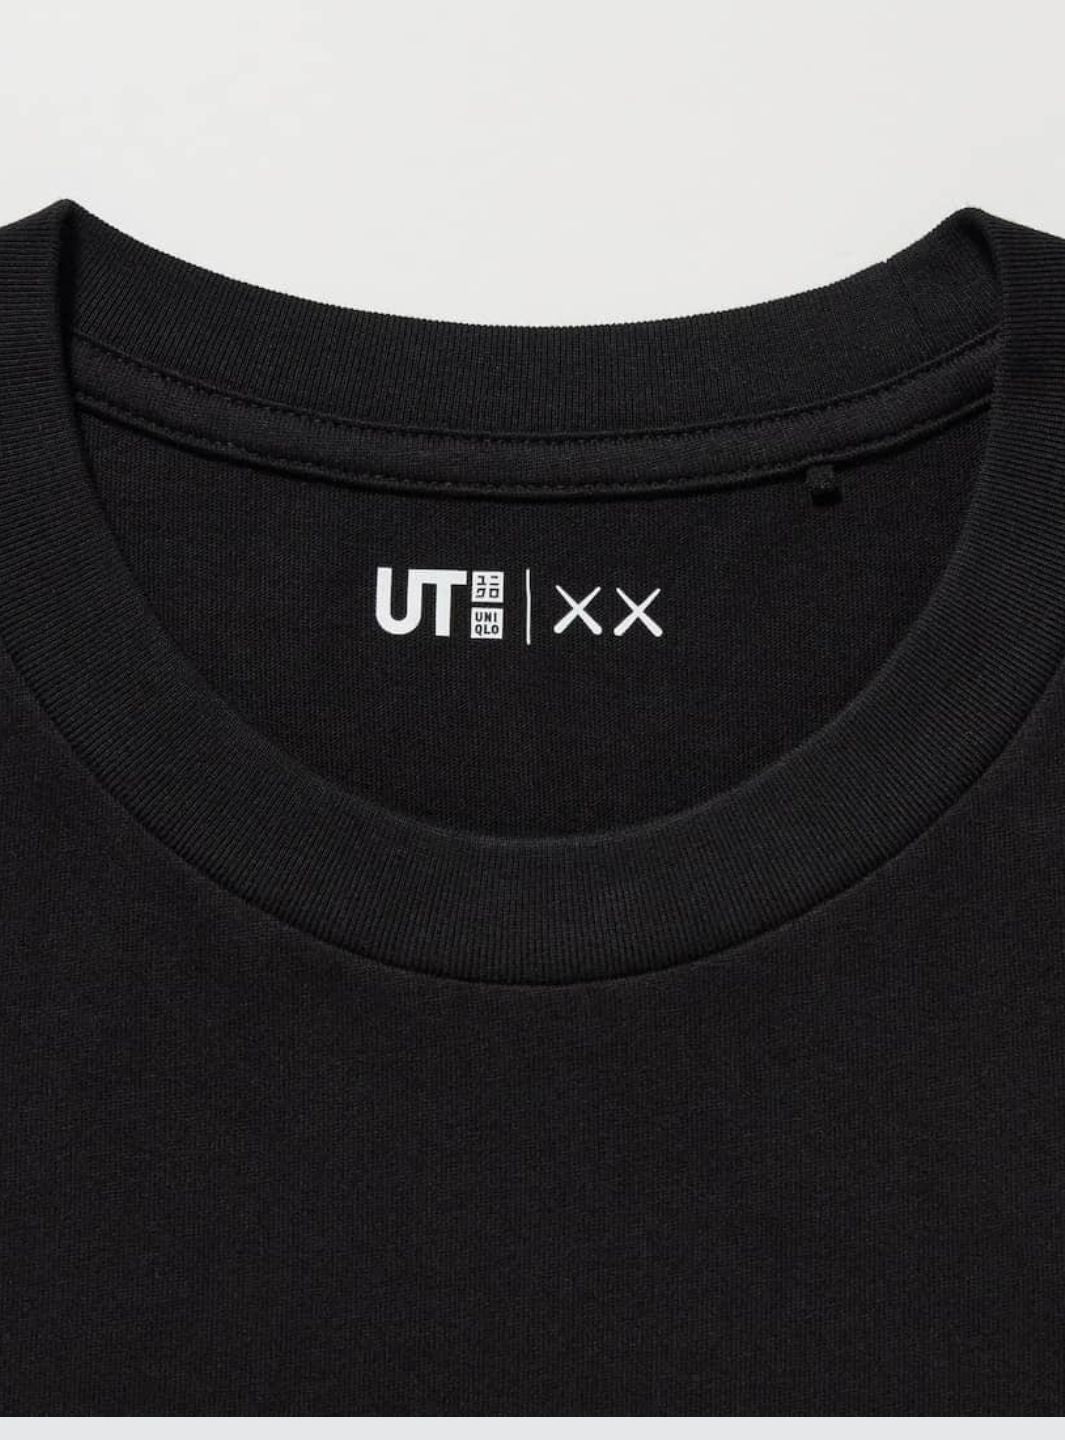 Uniqlo x Kaws T-Shirt Black